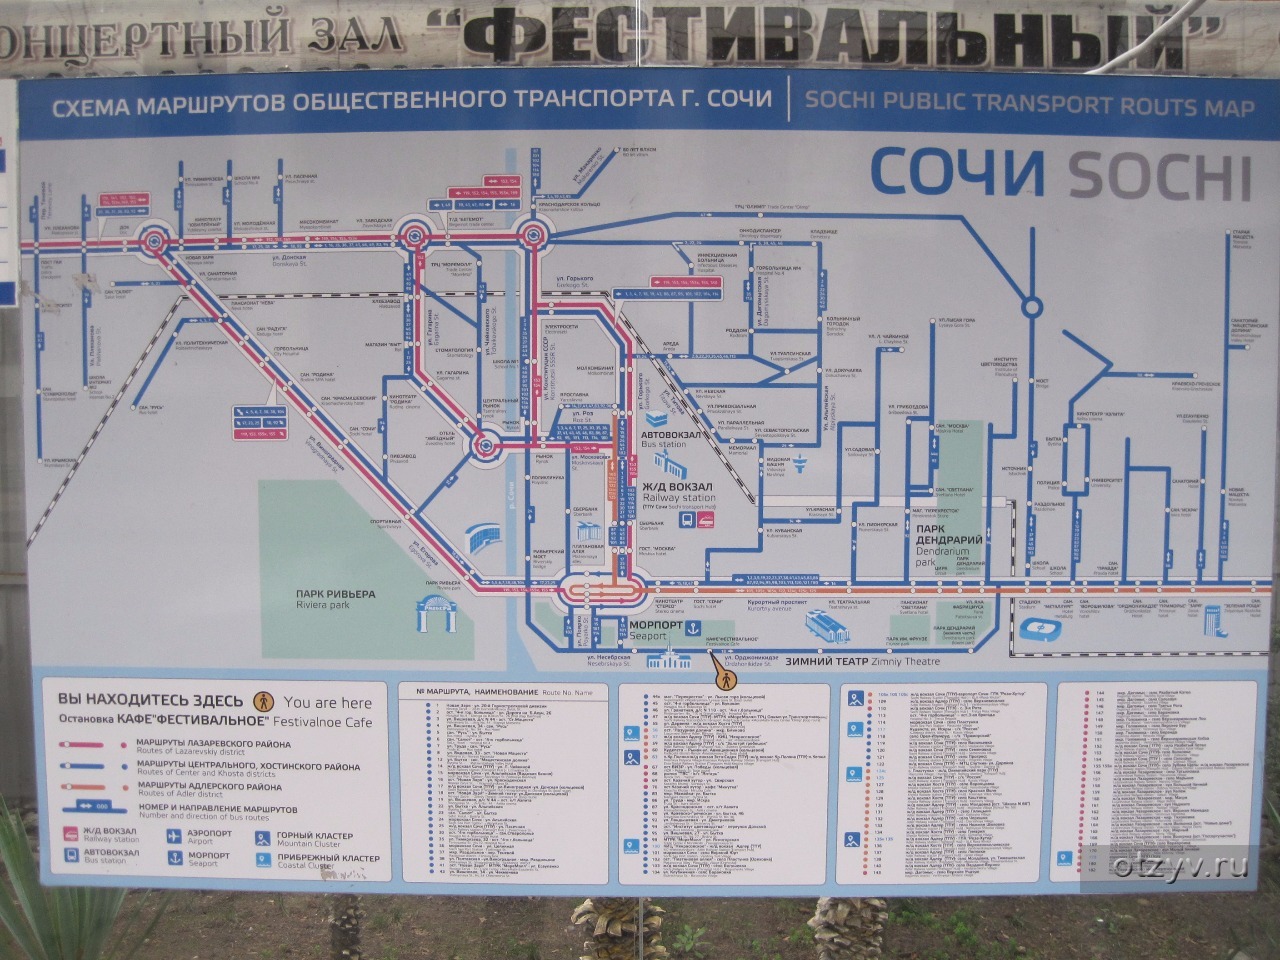 Адлер карта остановок автобус